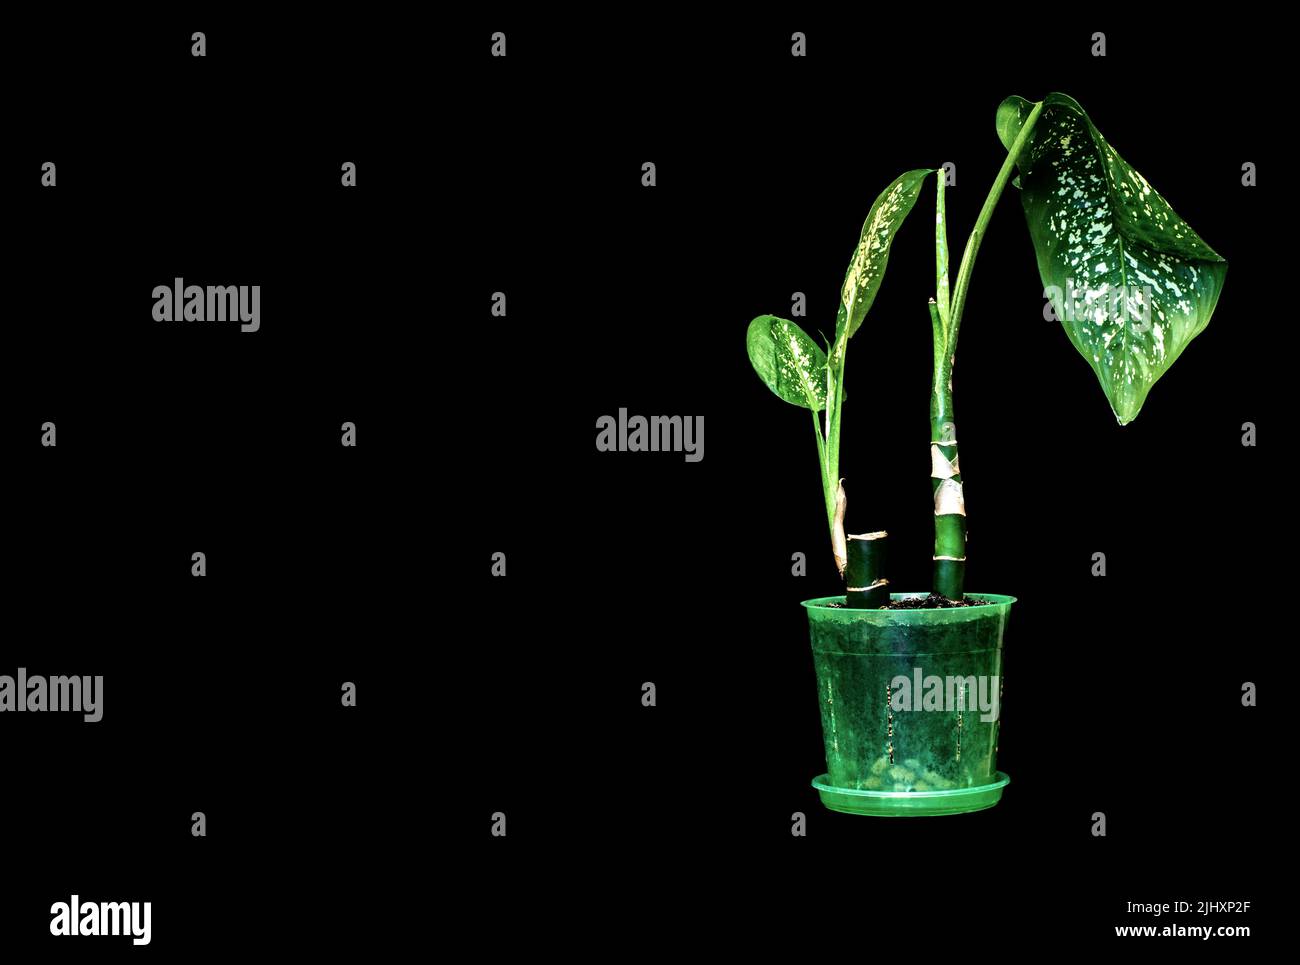 Image houseplant dieffenbachia on a black background Stock Photo